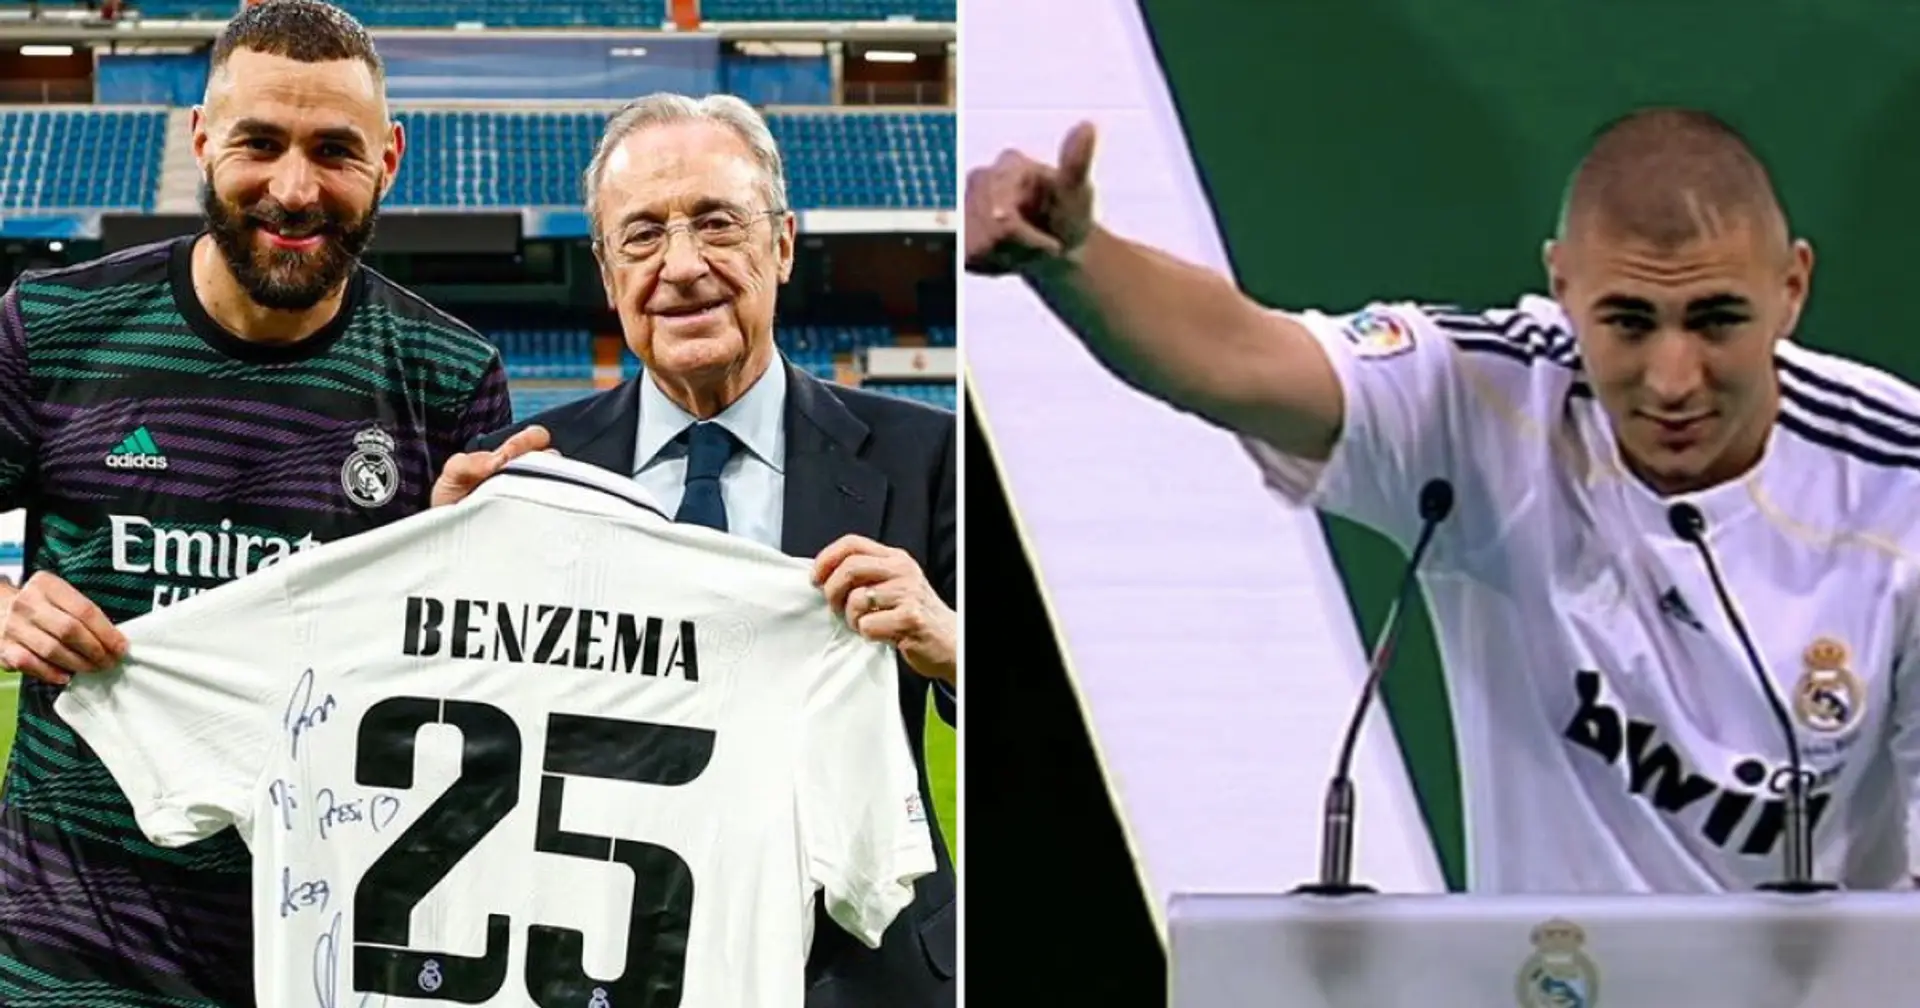 'Para mi presi': Explicamos el significado del regalo de despedida de Benzema a Florentino